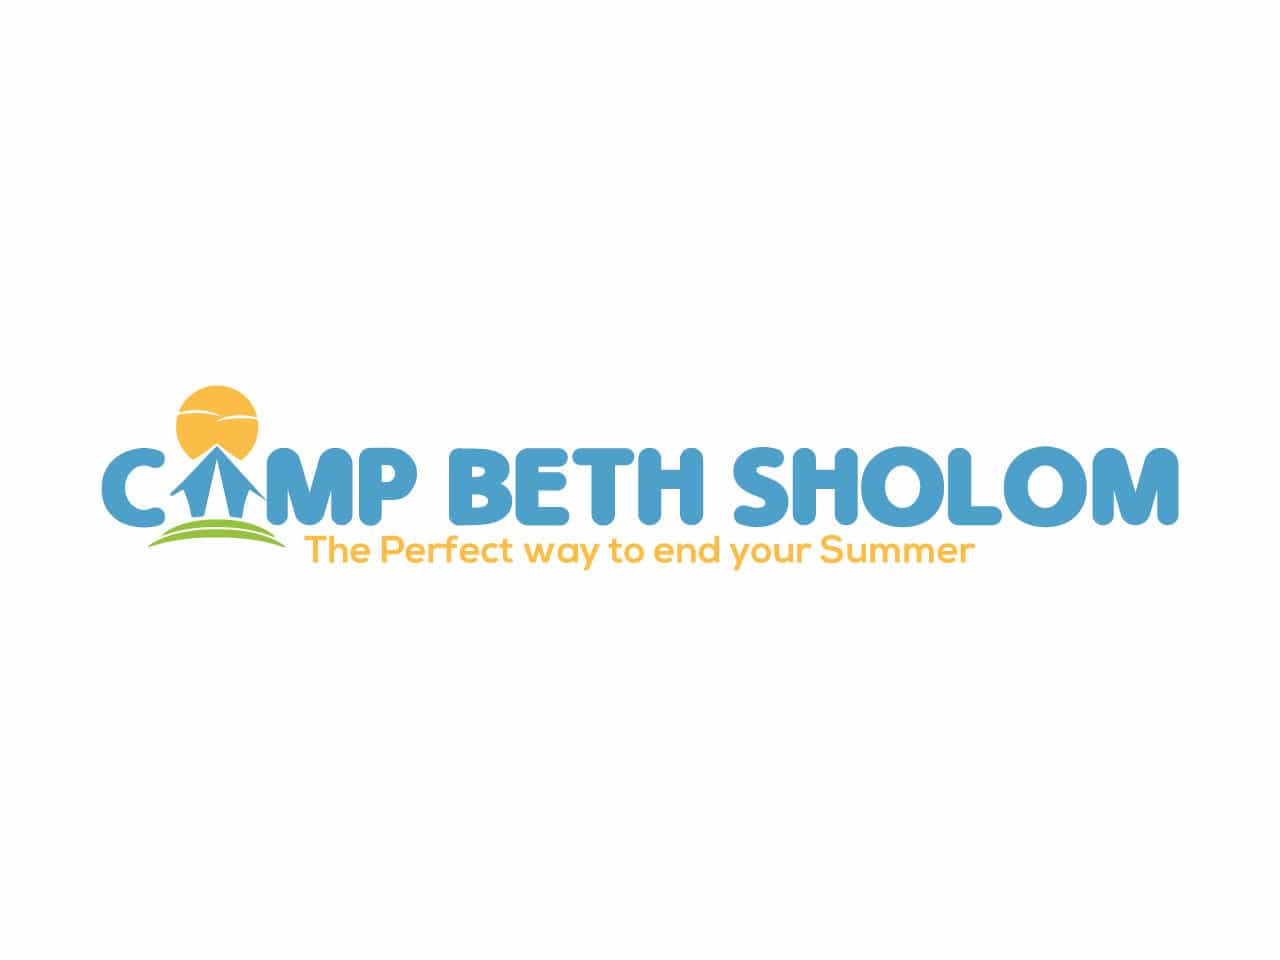 Camp Beth Sholom